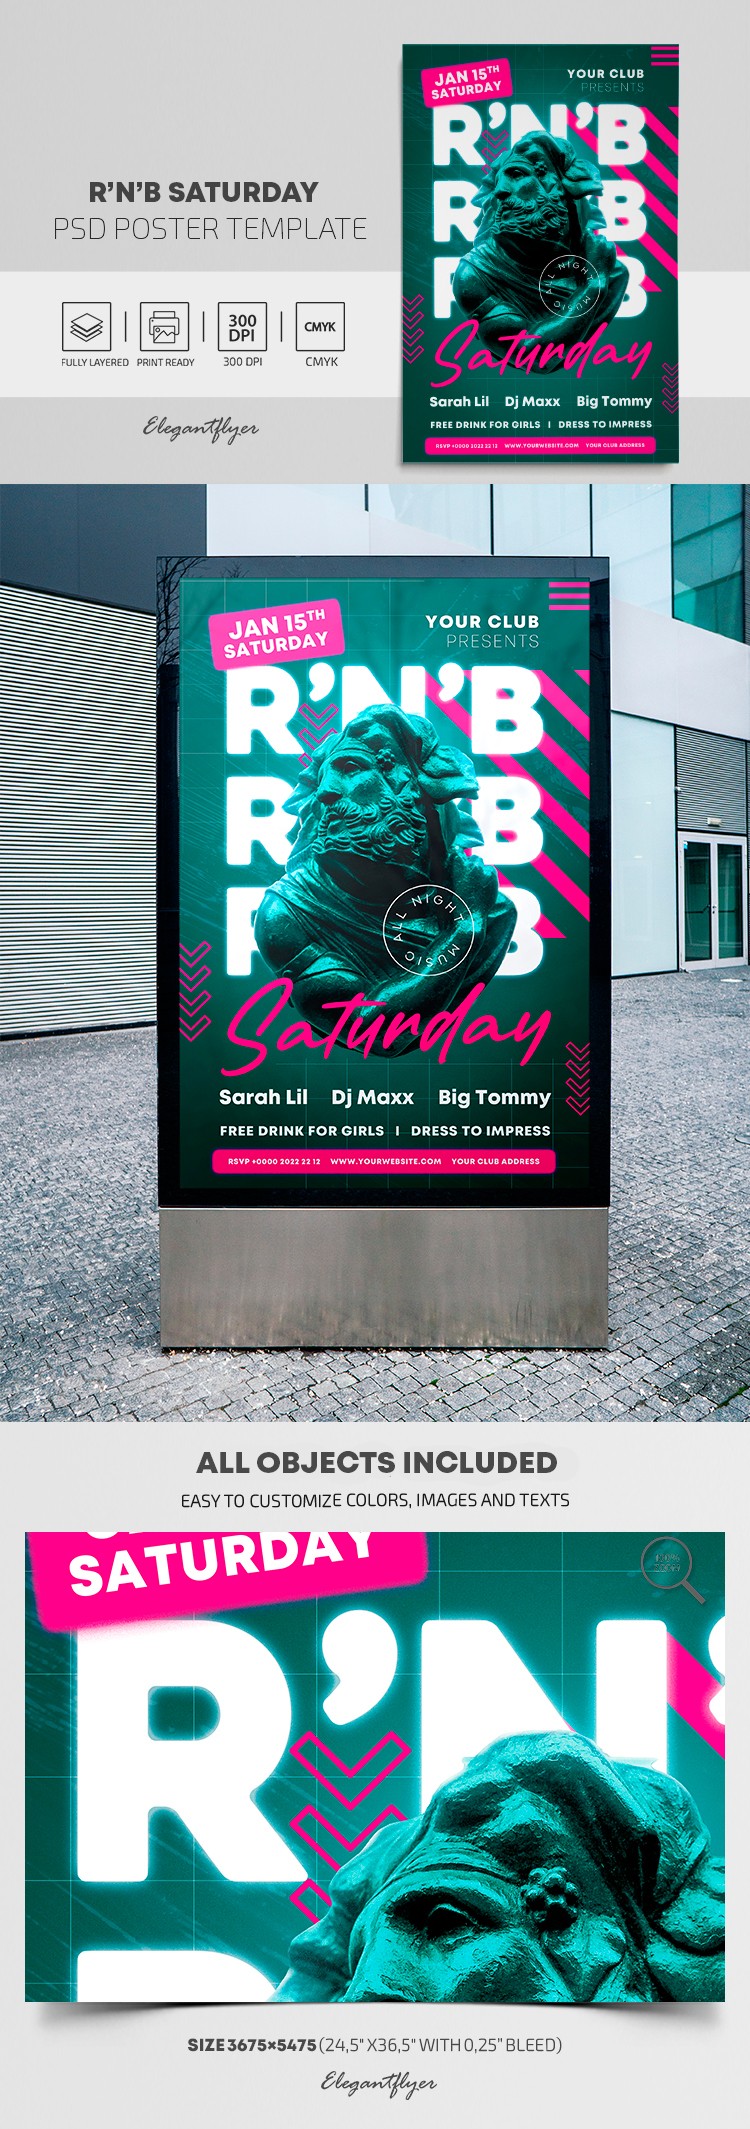 R'n'B Saturday Poster by ElegantFlyer